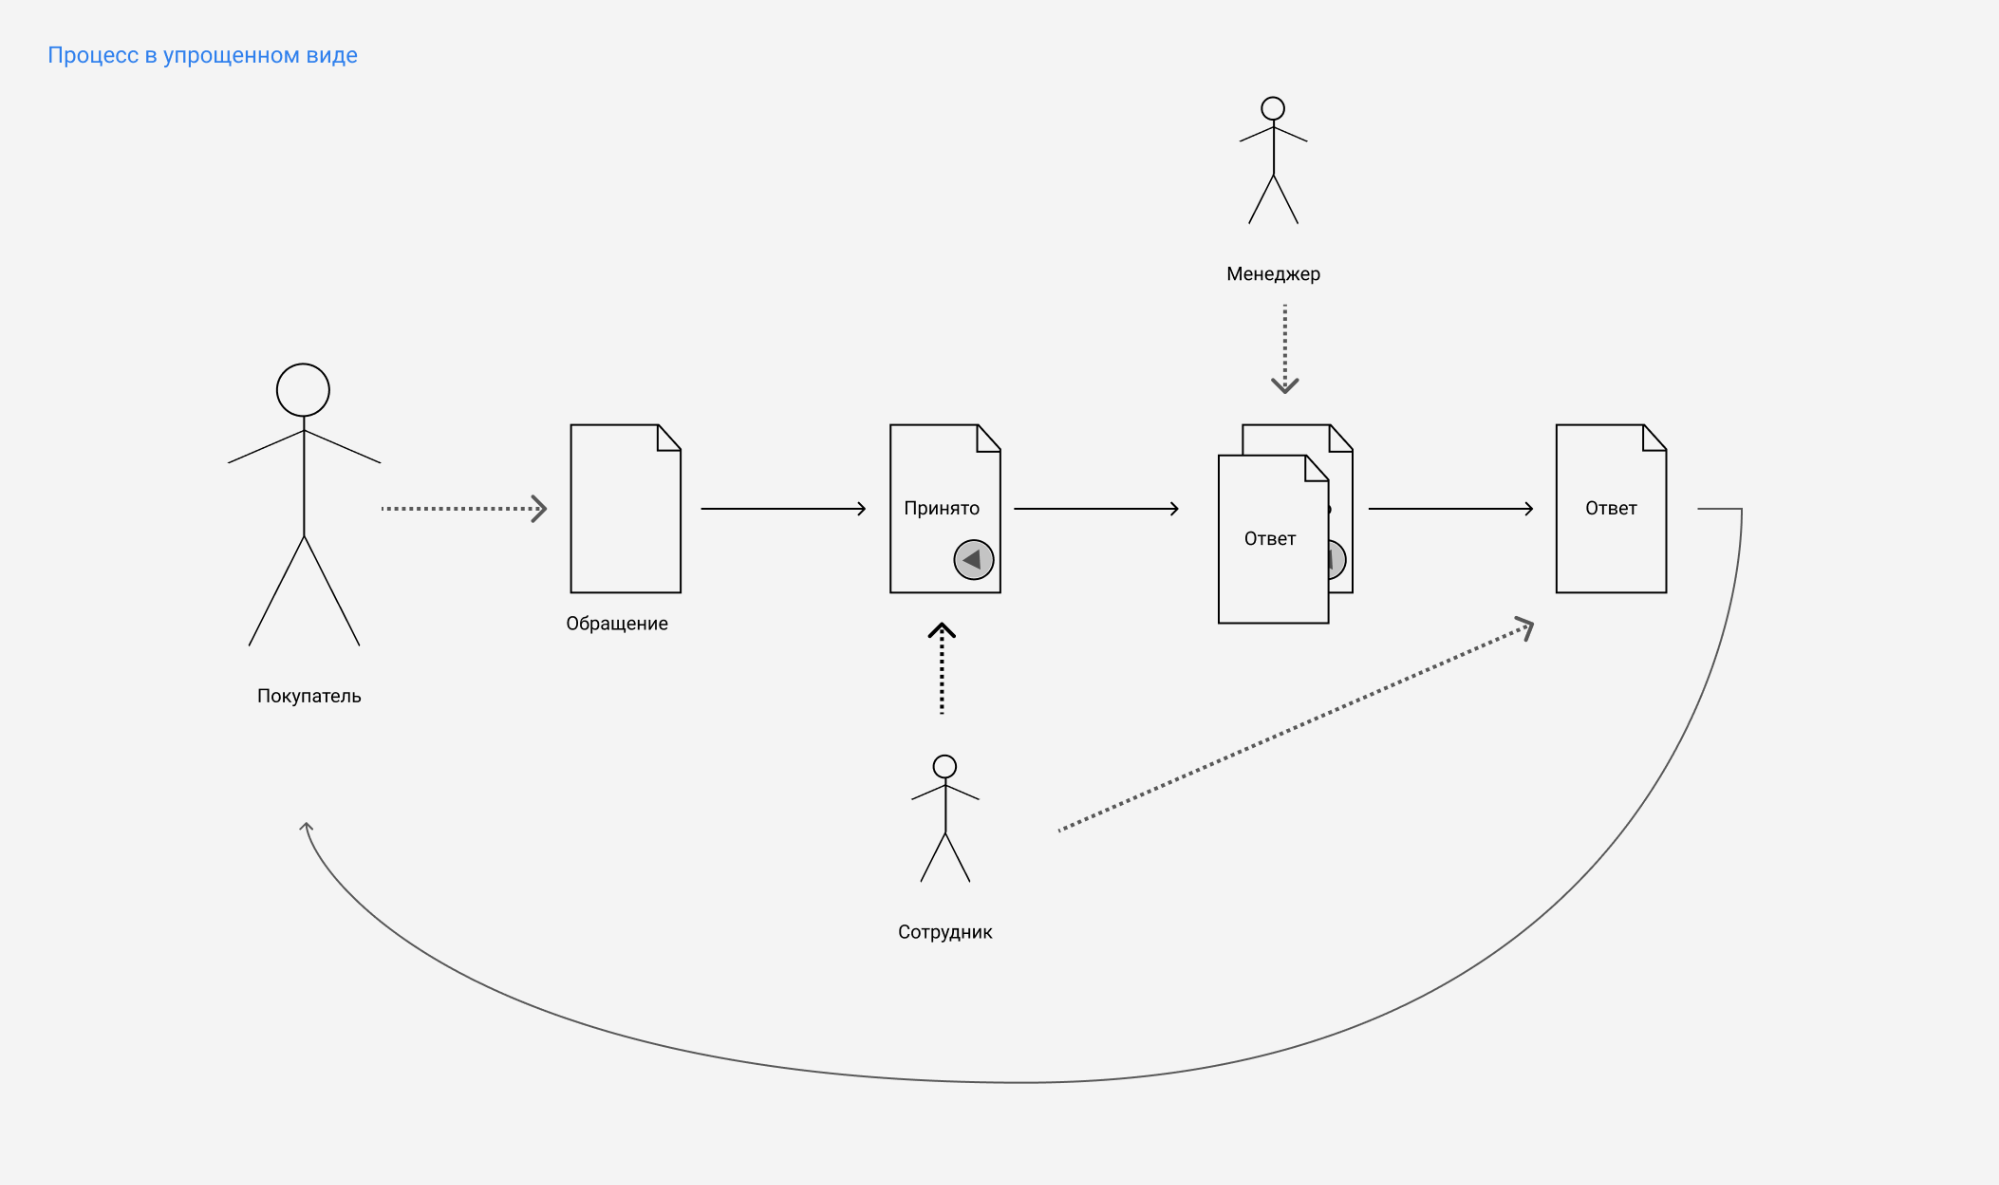 Цифровая трансформация «Леруа Мерлен»: проектирование интерфейса для работы с обращениями покупателей - 2